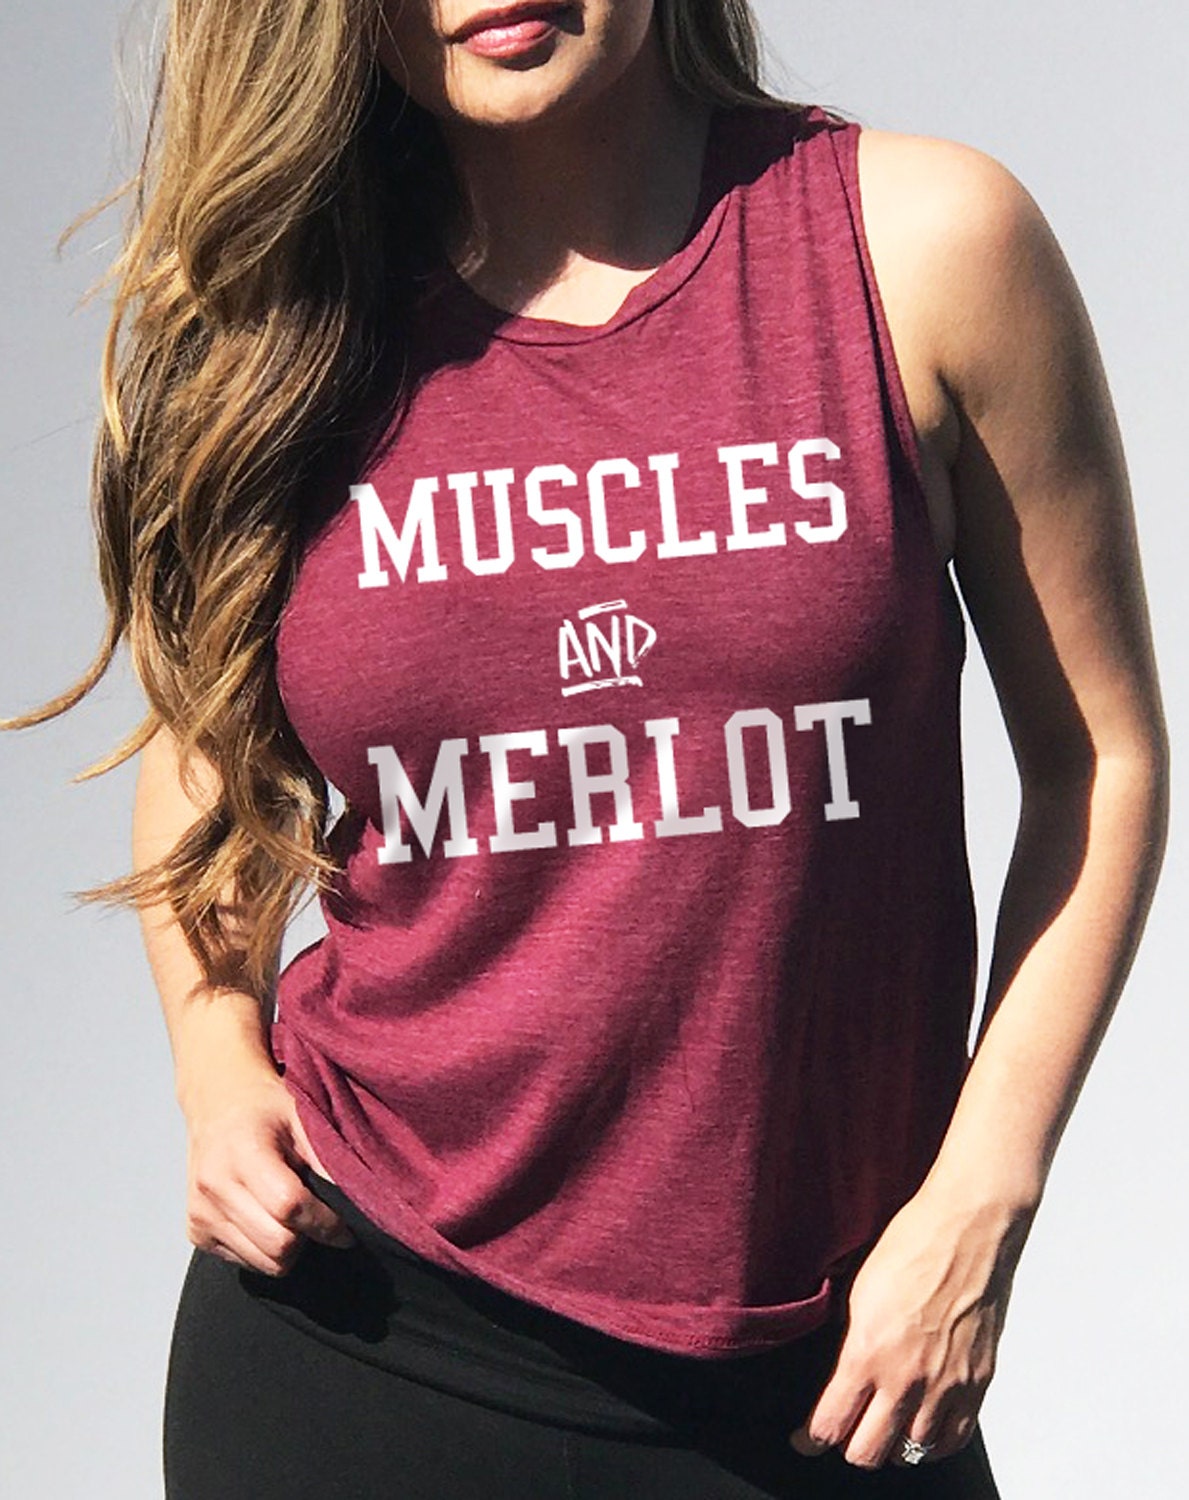 MUSCLES & MERLOT Workout Tank Top Women's Muscle Tank | Etsy